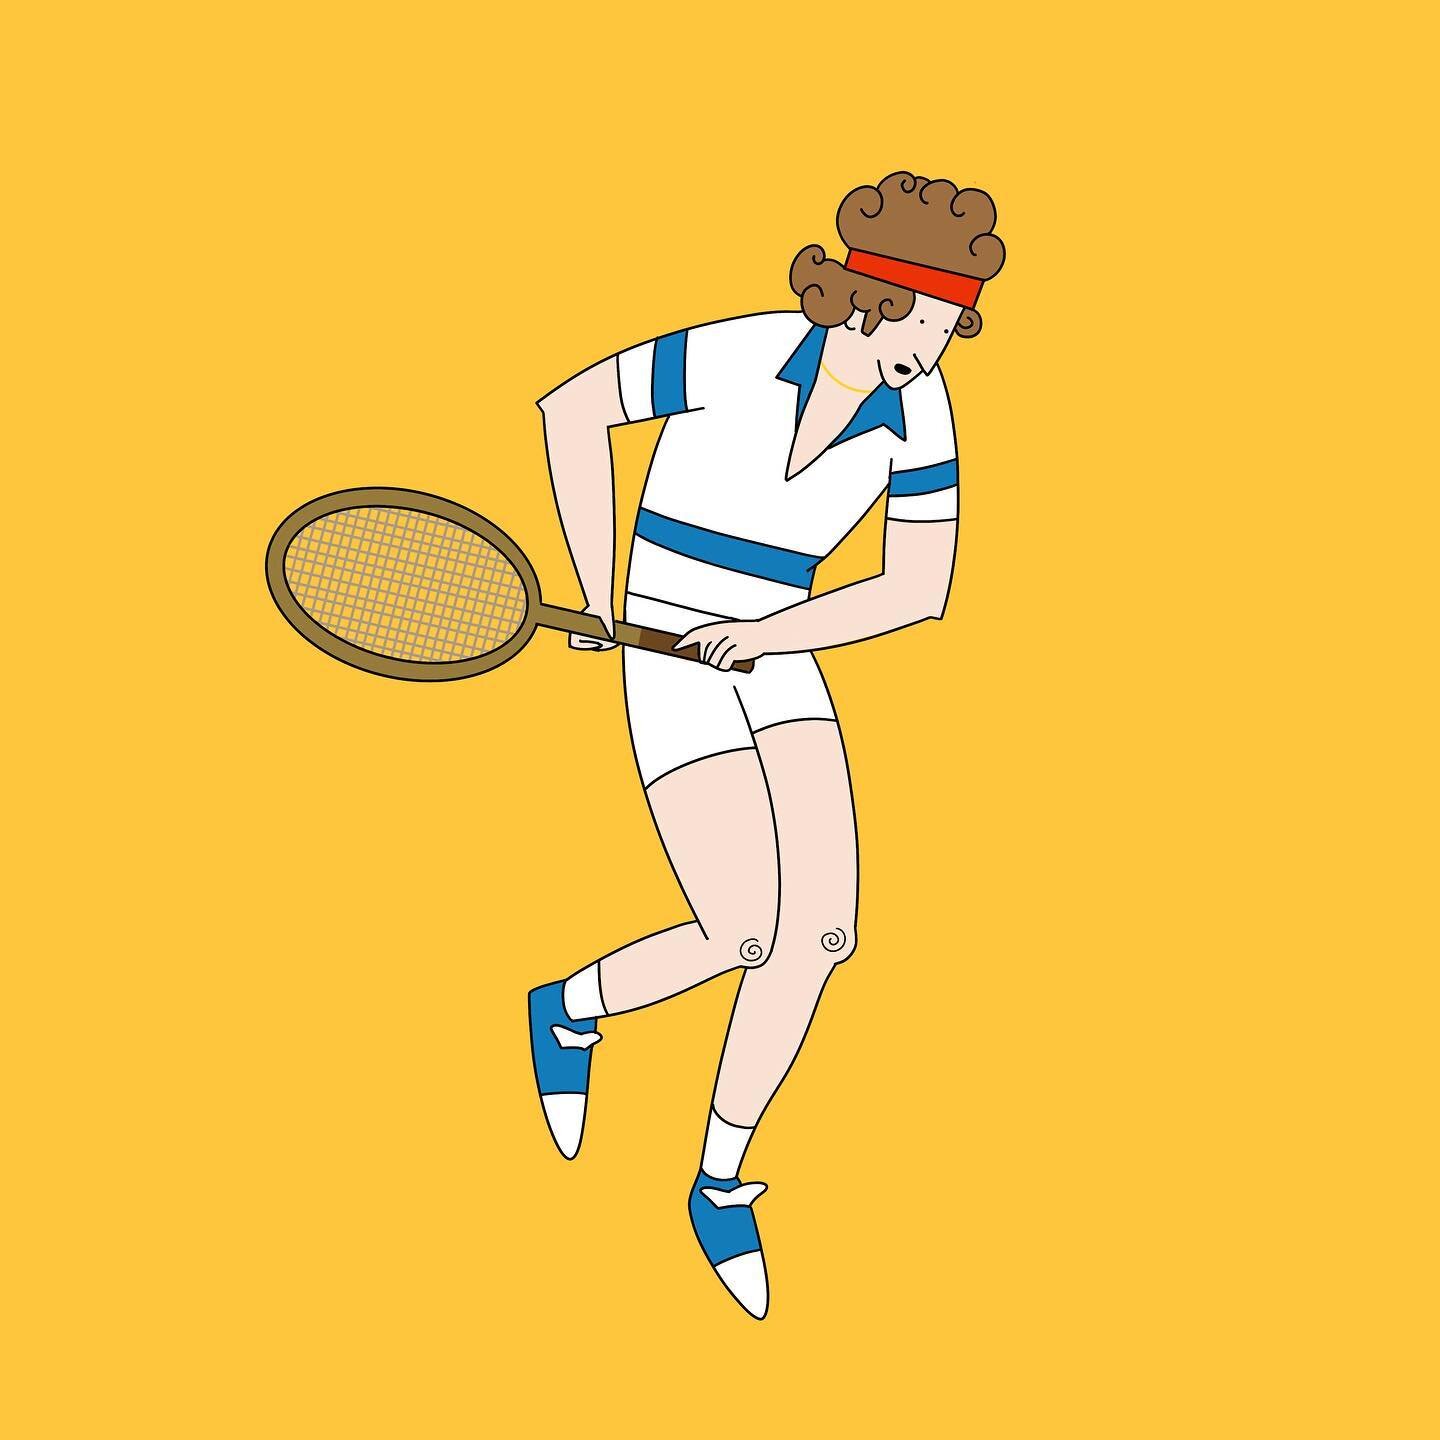 just a lil dood #tennis #illustration #procreate #ipadpro #applepencil #mcenroe #doodle